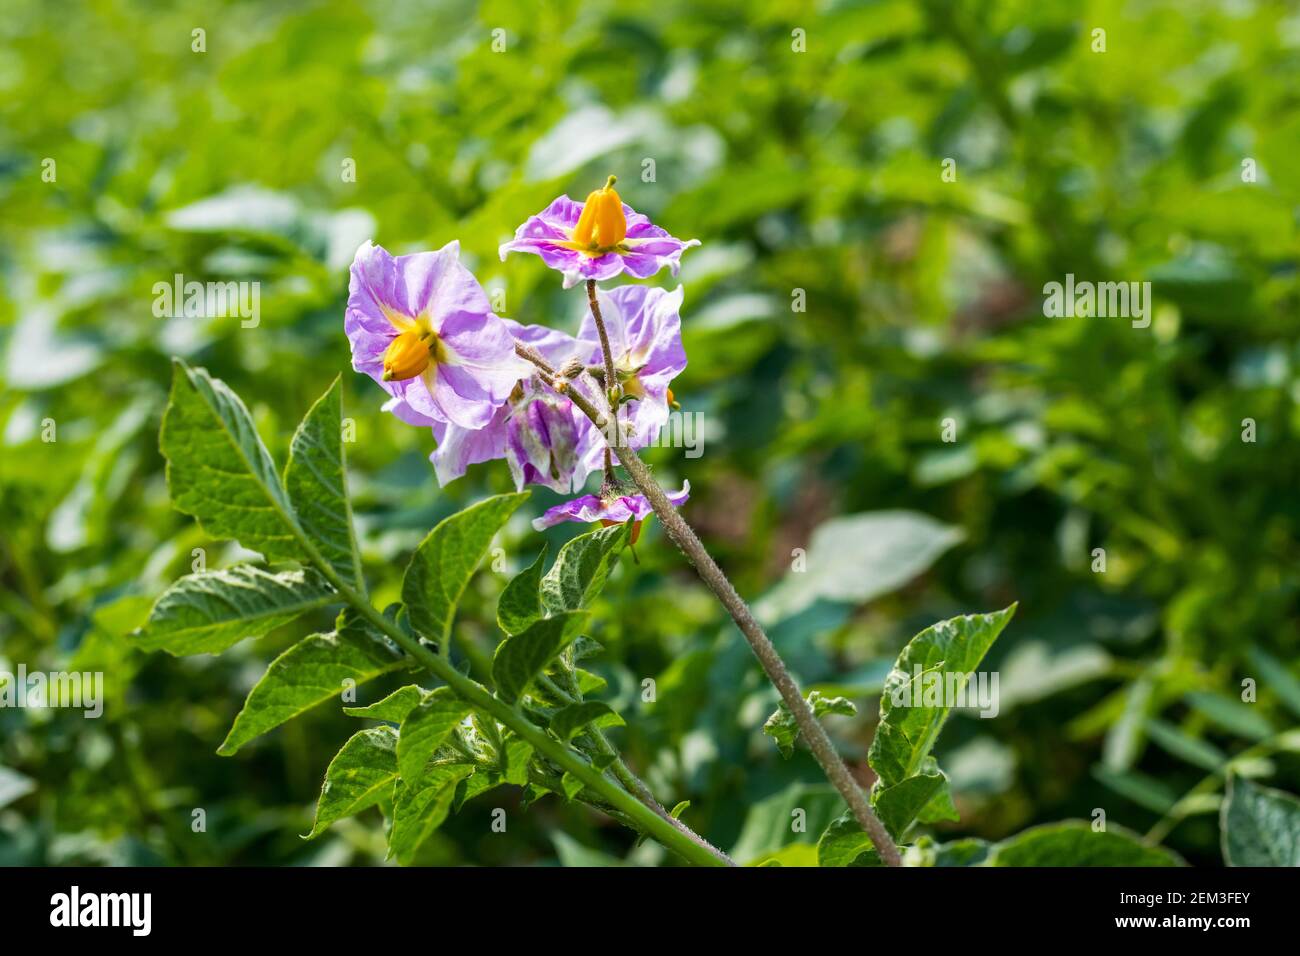 Una pianta di patata produce fiori, e poi frutti verdi contenenti semi, per riprodurre e fiori di patata assomiglia molto al fiore di pomodoro Foto Stock